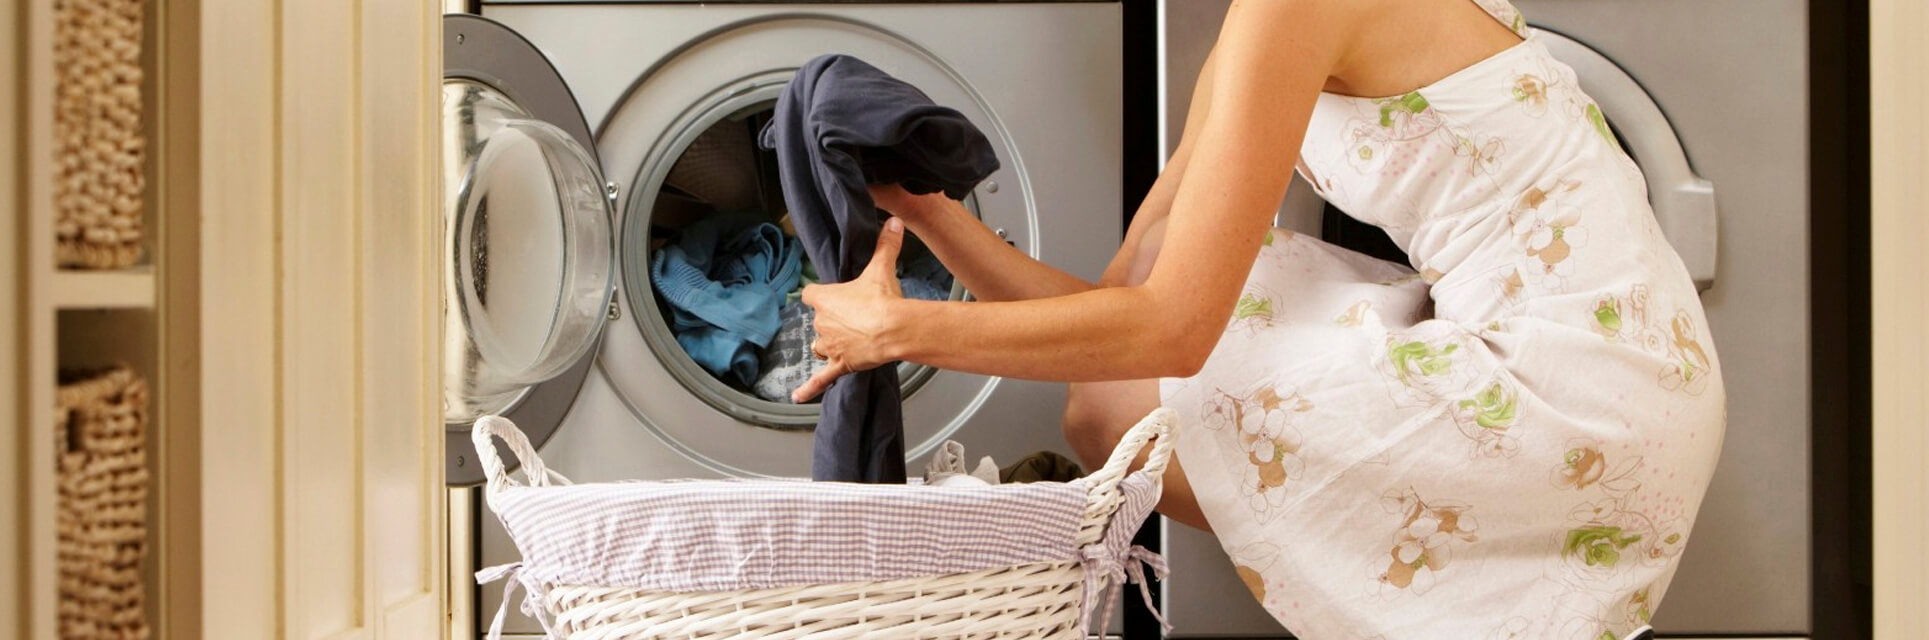 Servicio técnico lavadoras siemens